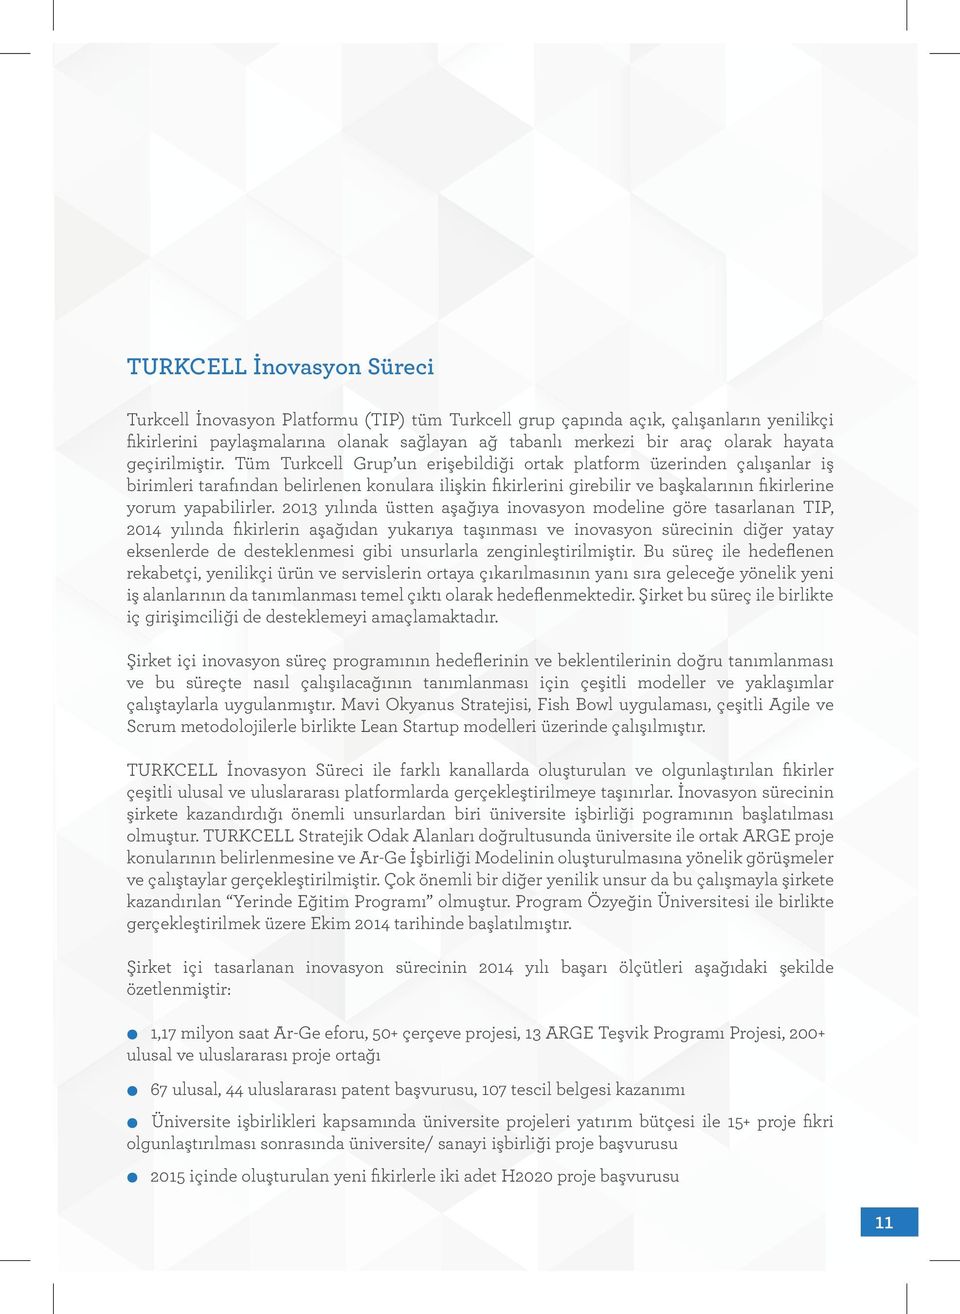 Tüm Turkcell Grup un erişebildiği ortak platform üzerinden çalışanlar iş birimleri tarafından belirlenen konulara ilişkin fikirlerini girebilir ve başkalarının fikirlerine yorum yapabilirler.